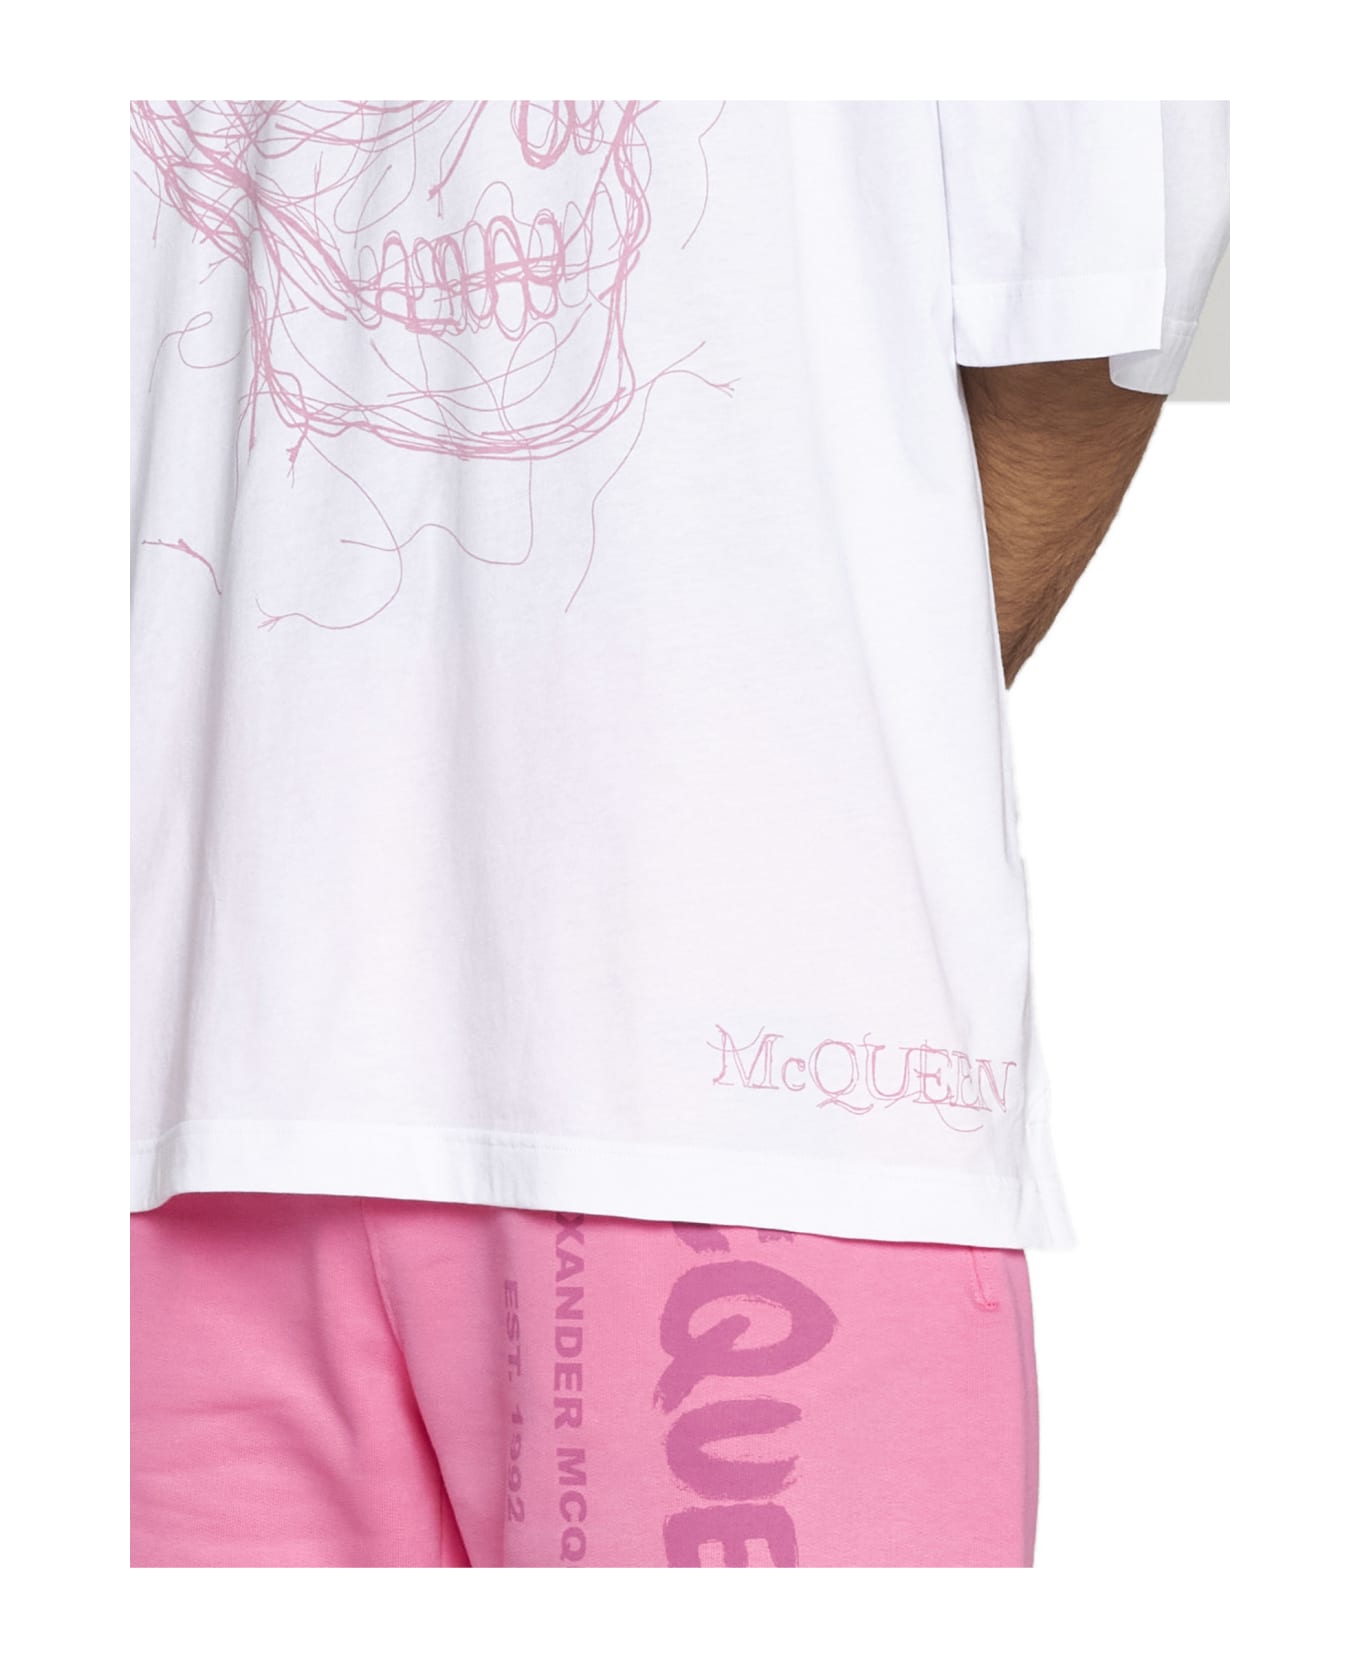 Alexander McQueen T-Shirt - White pink